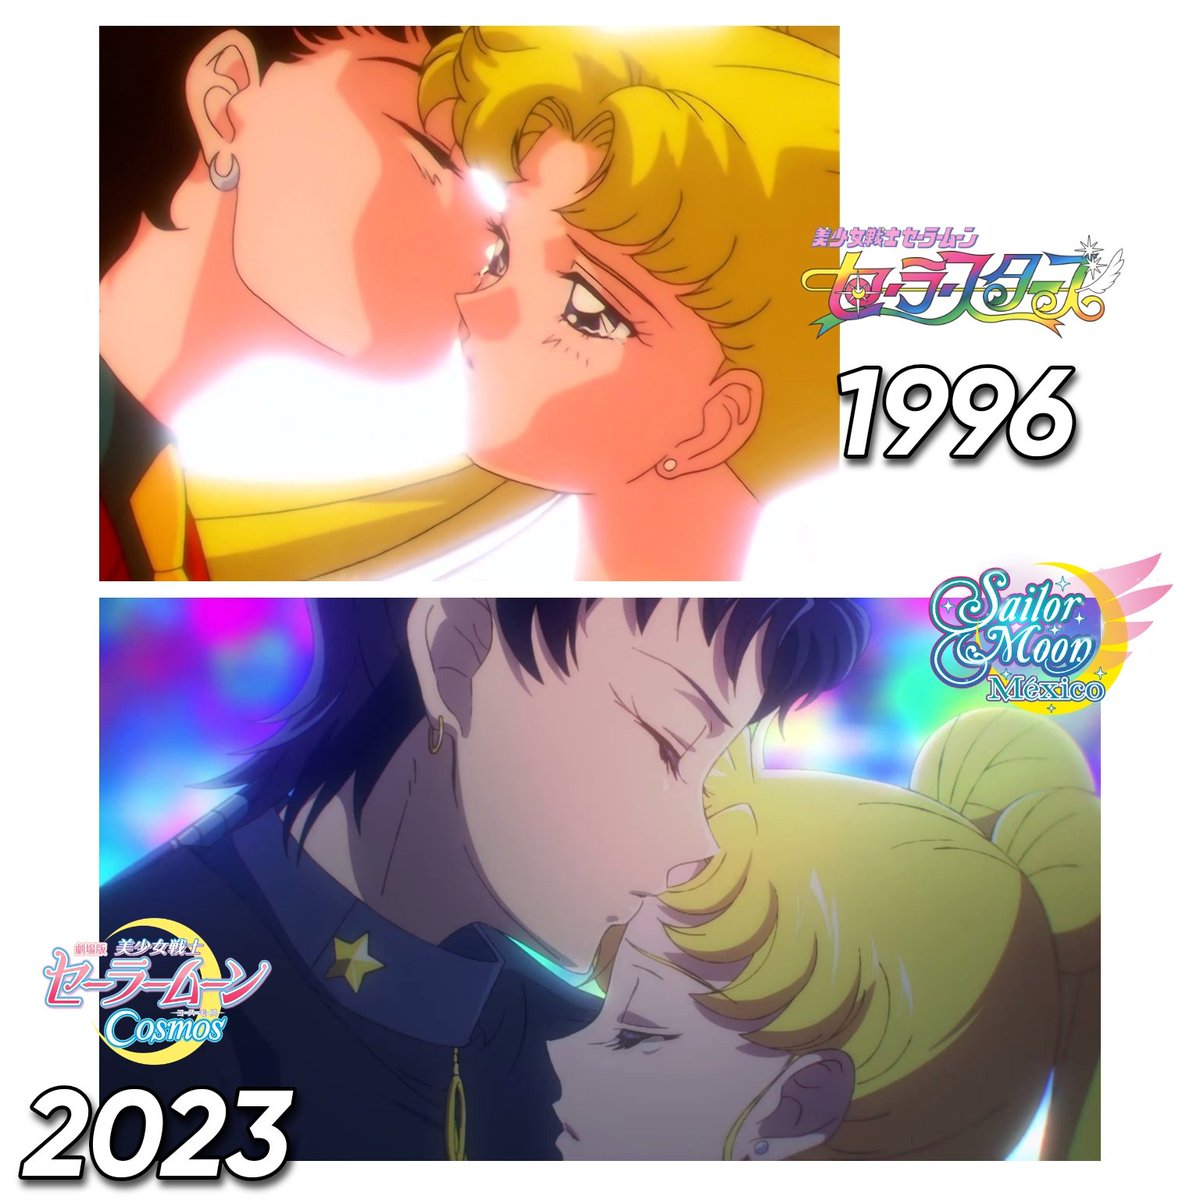 'El Beso' entre Usagi y Seiya en Sailor Moon Sailor Stars en la animación de 1996 y ahora en la película de Sailor Moon Cosmos.

#seiya #usagi #sailormoon #sailormooncosmls #sailormoonstars #sailormoonmexico